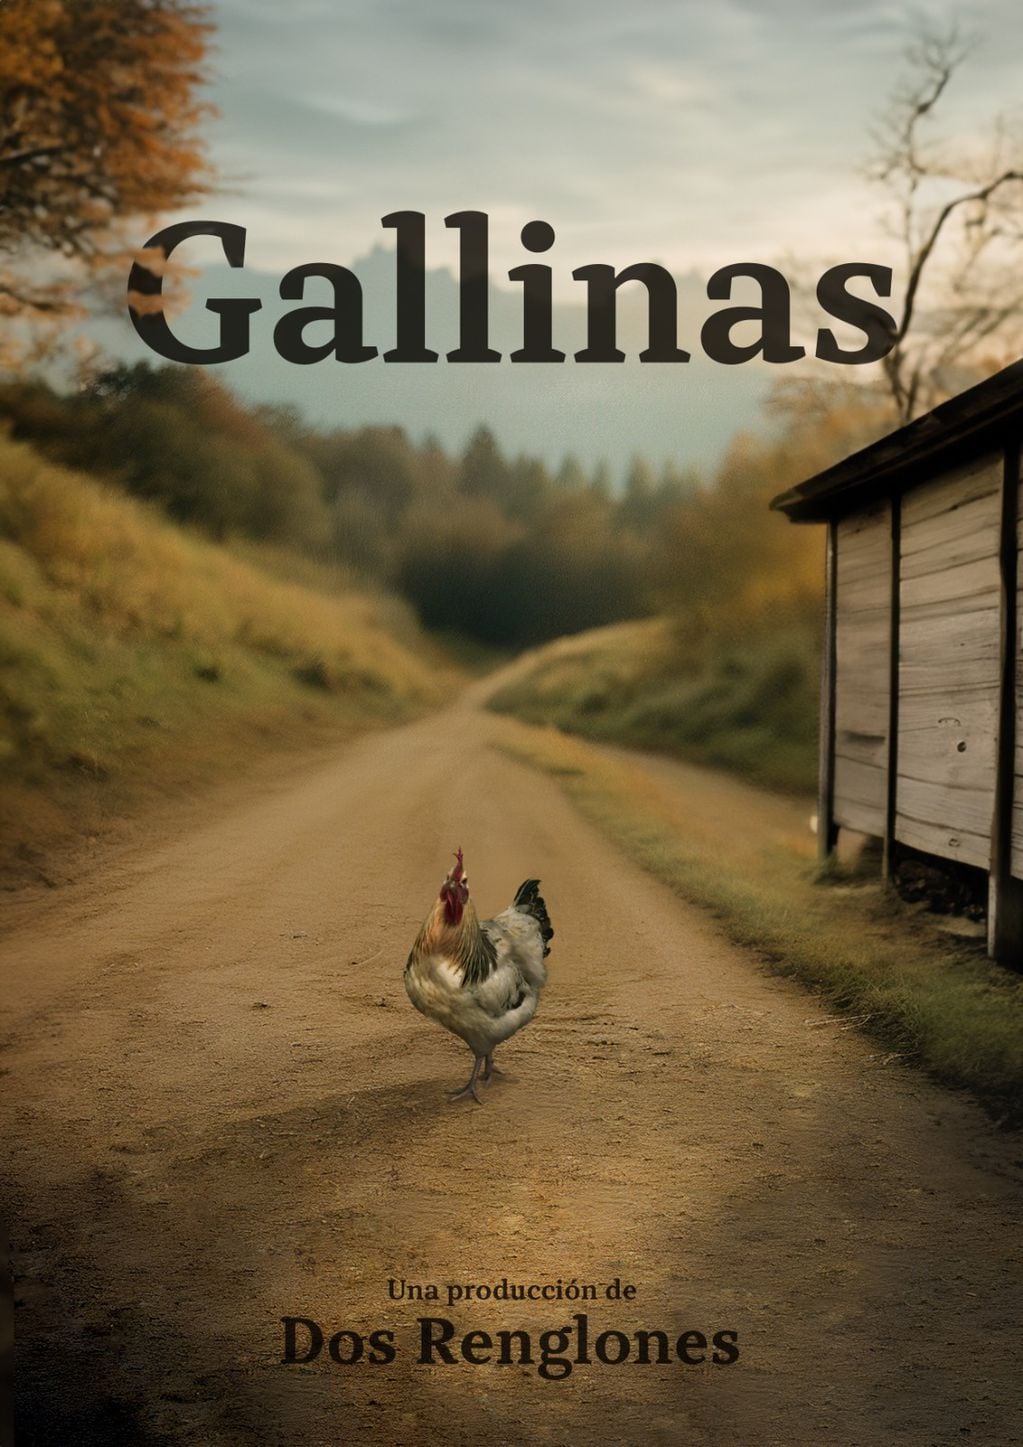 Cortometraje “Gallinas" producida por Dos Renglones. 